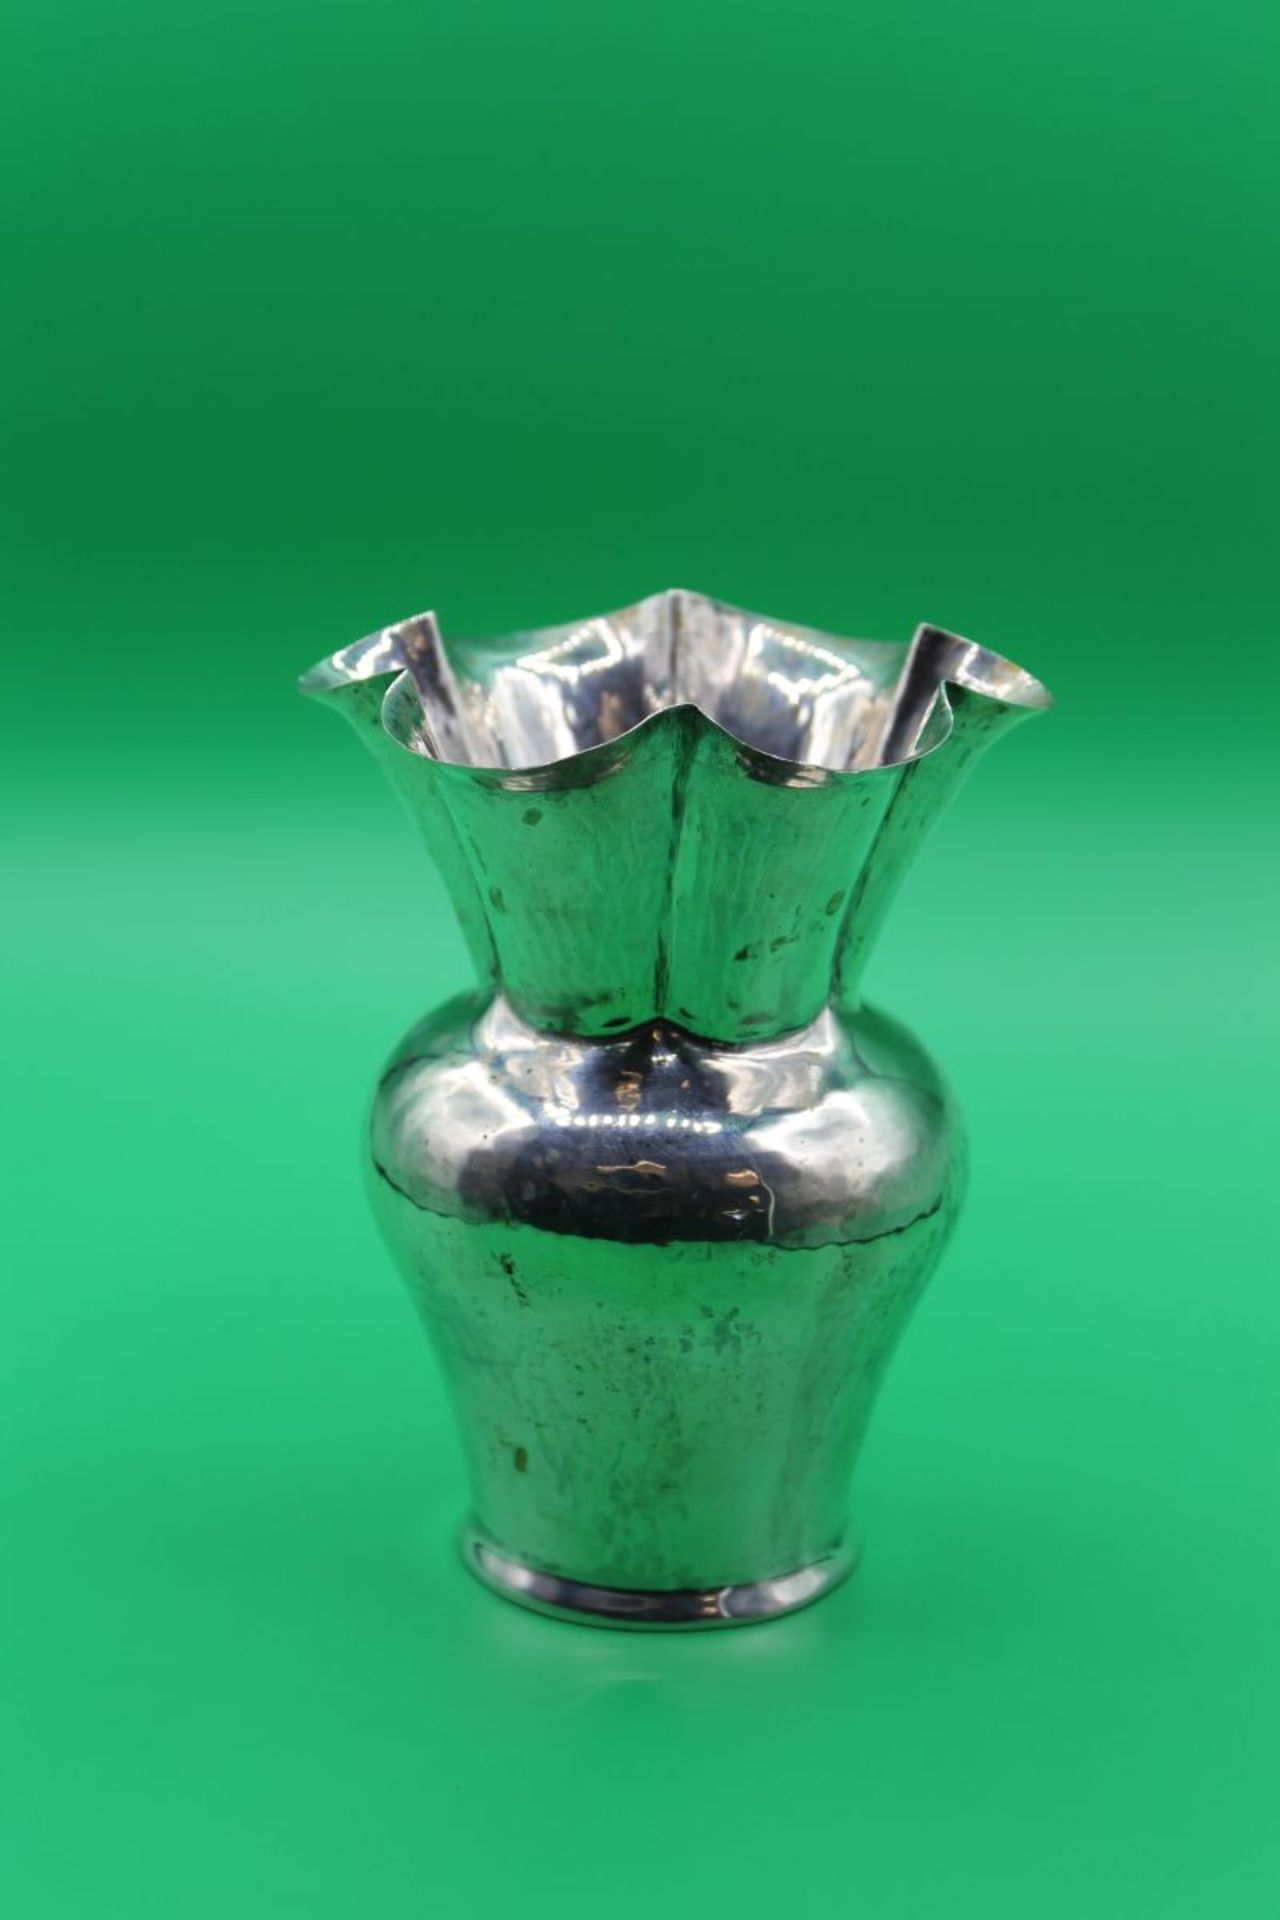 800er Silber Vase, gemarkt "800 Battudo a mano 29 P.", Hammerschlagdekor, 200gr., leider eine Beule,